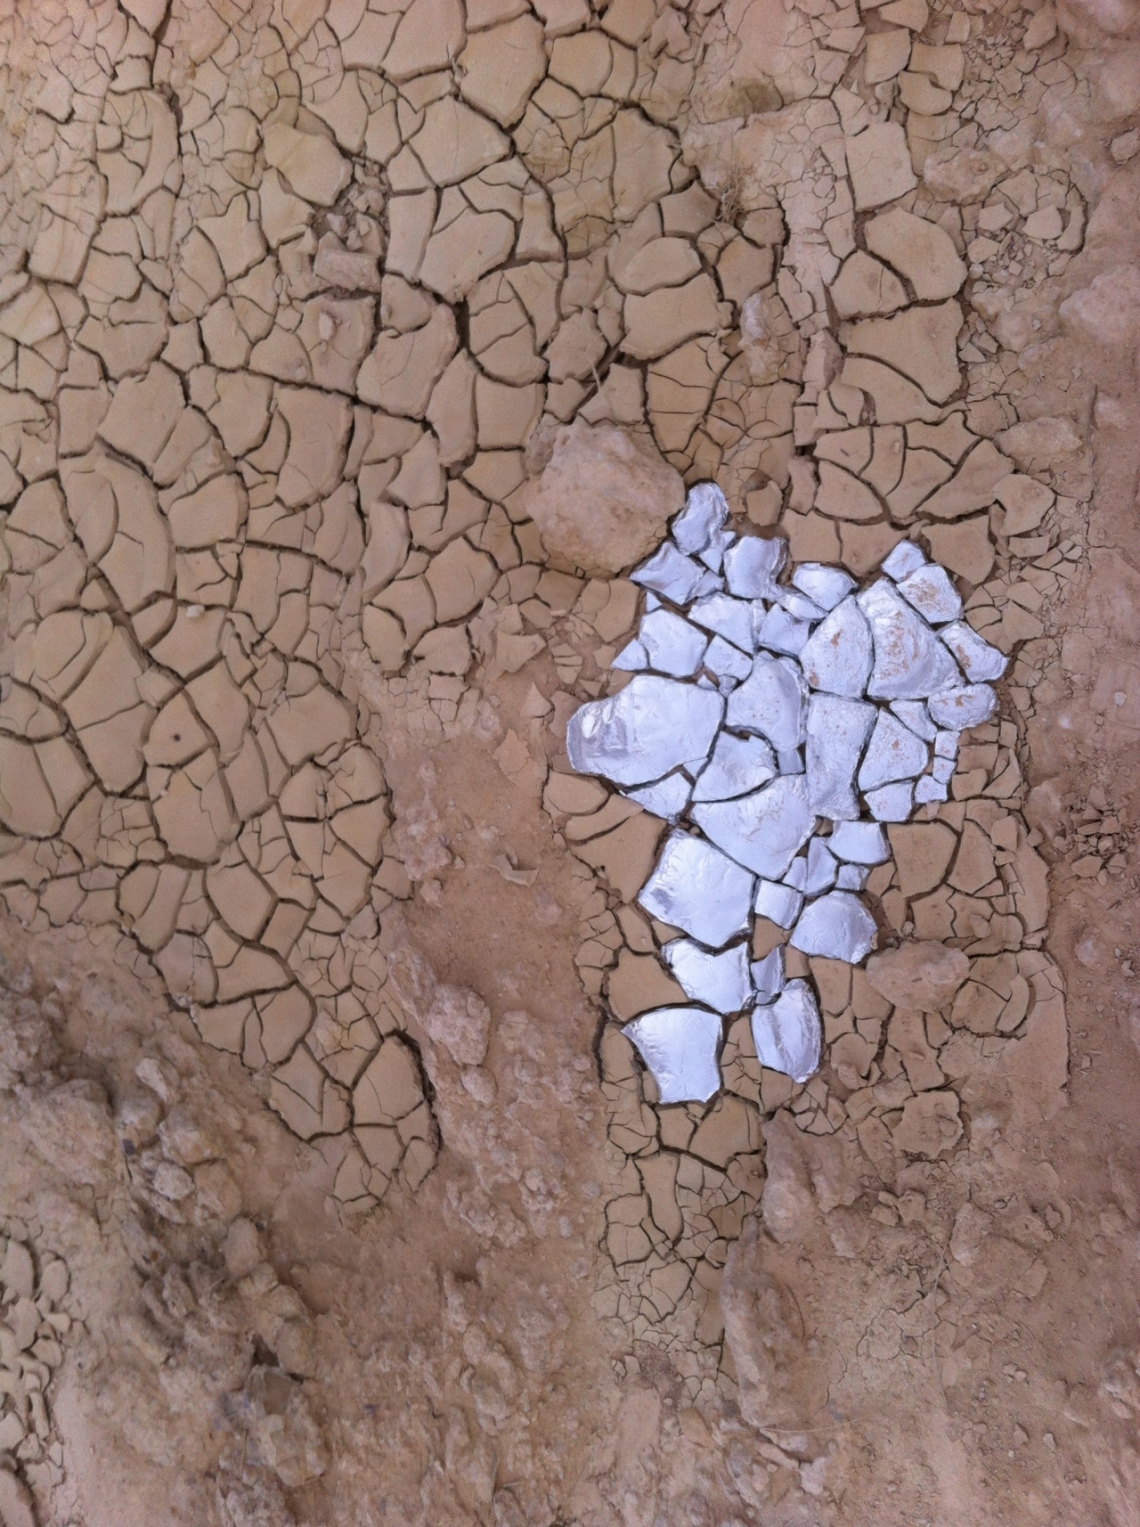 Ella Spector, Land art project, Arava desert of Israel 2013